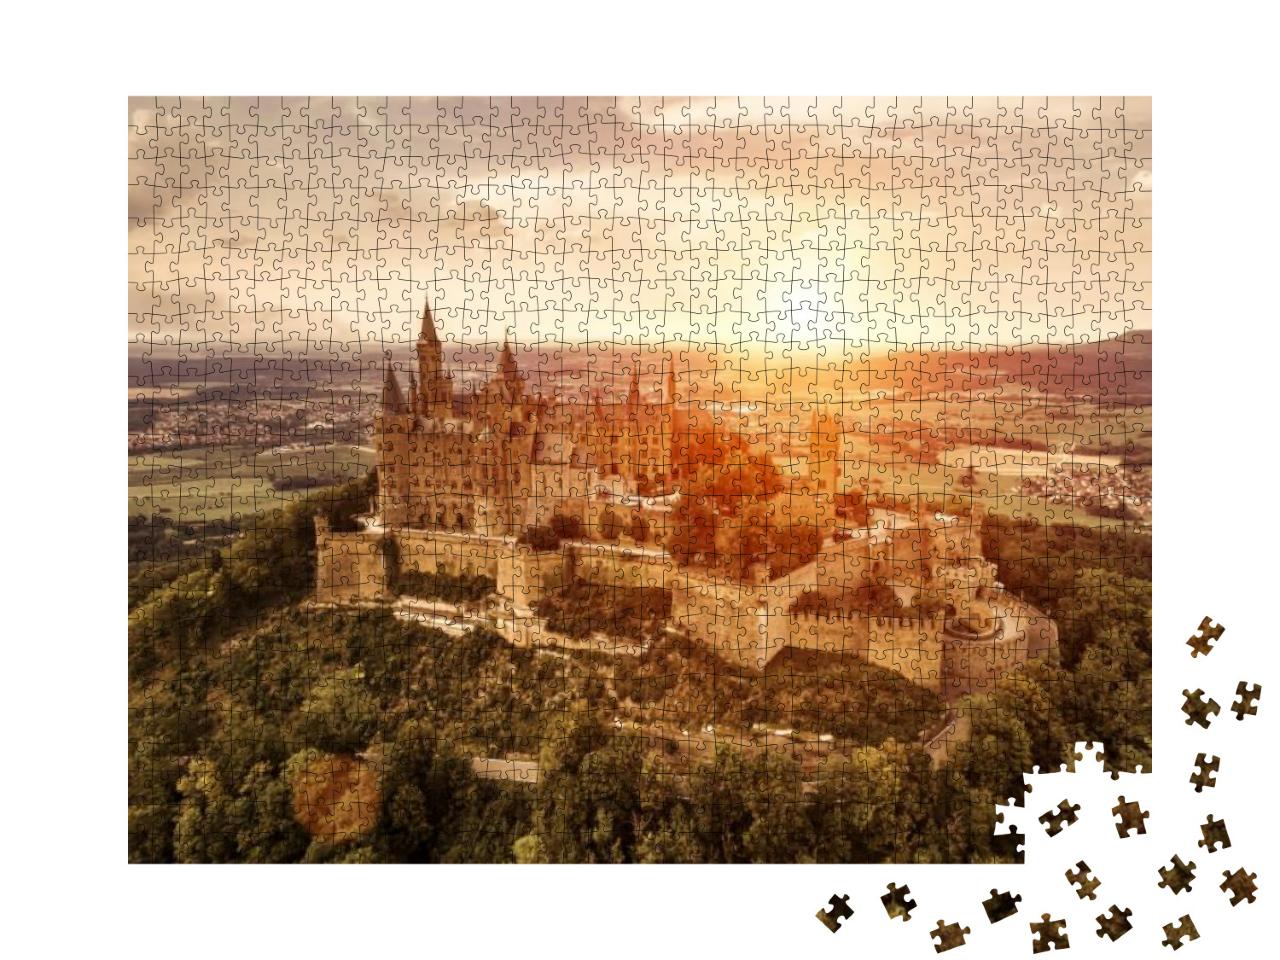 Puzzle 1000 Teile „Burg Hohenzollern bei Sonnenuntergang, Schwäbische Alb“